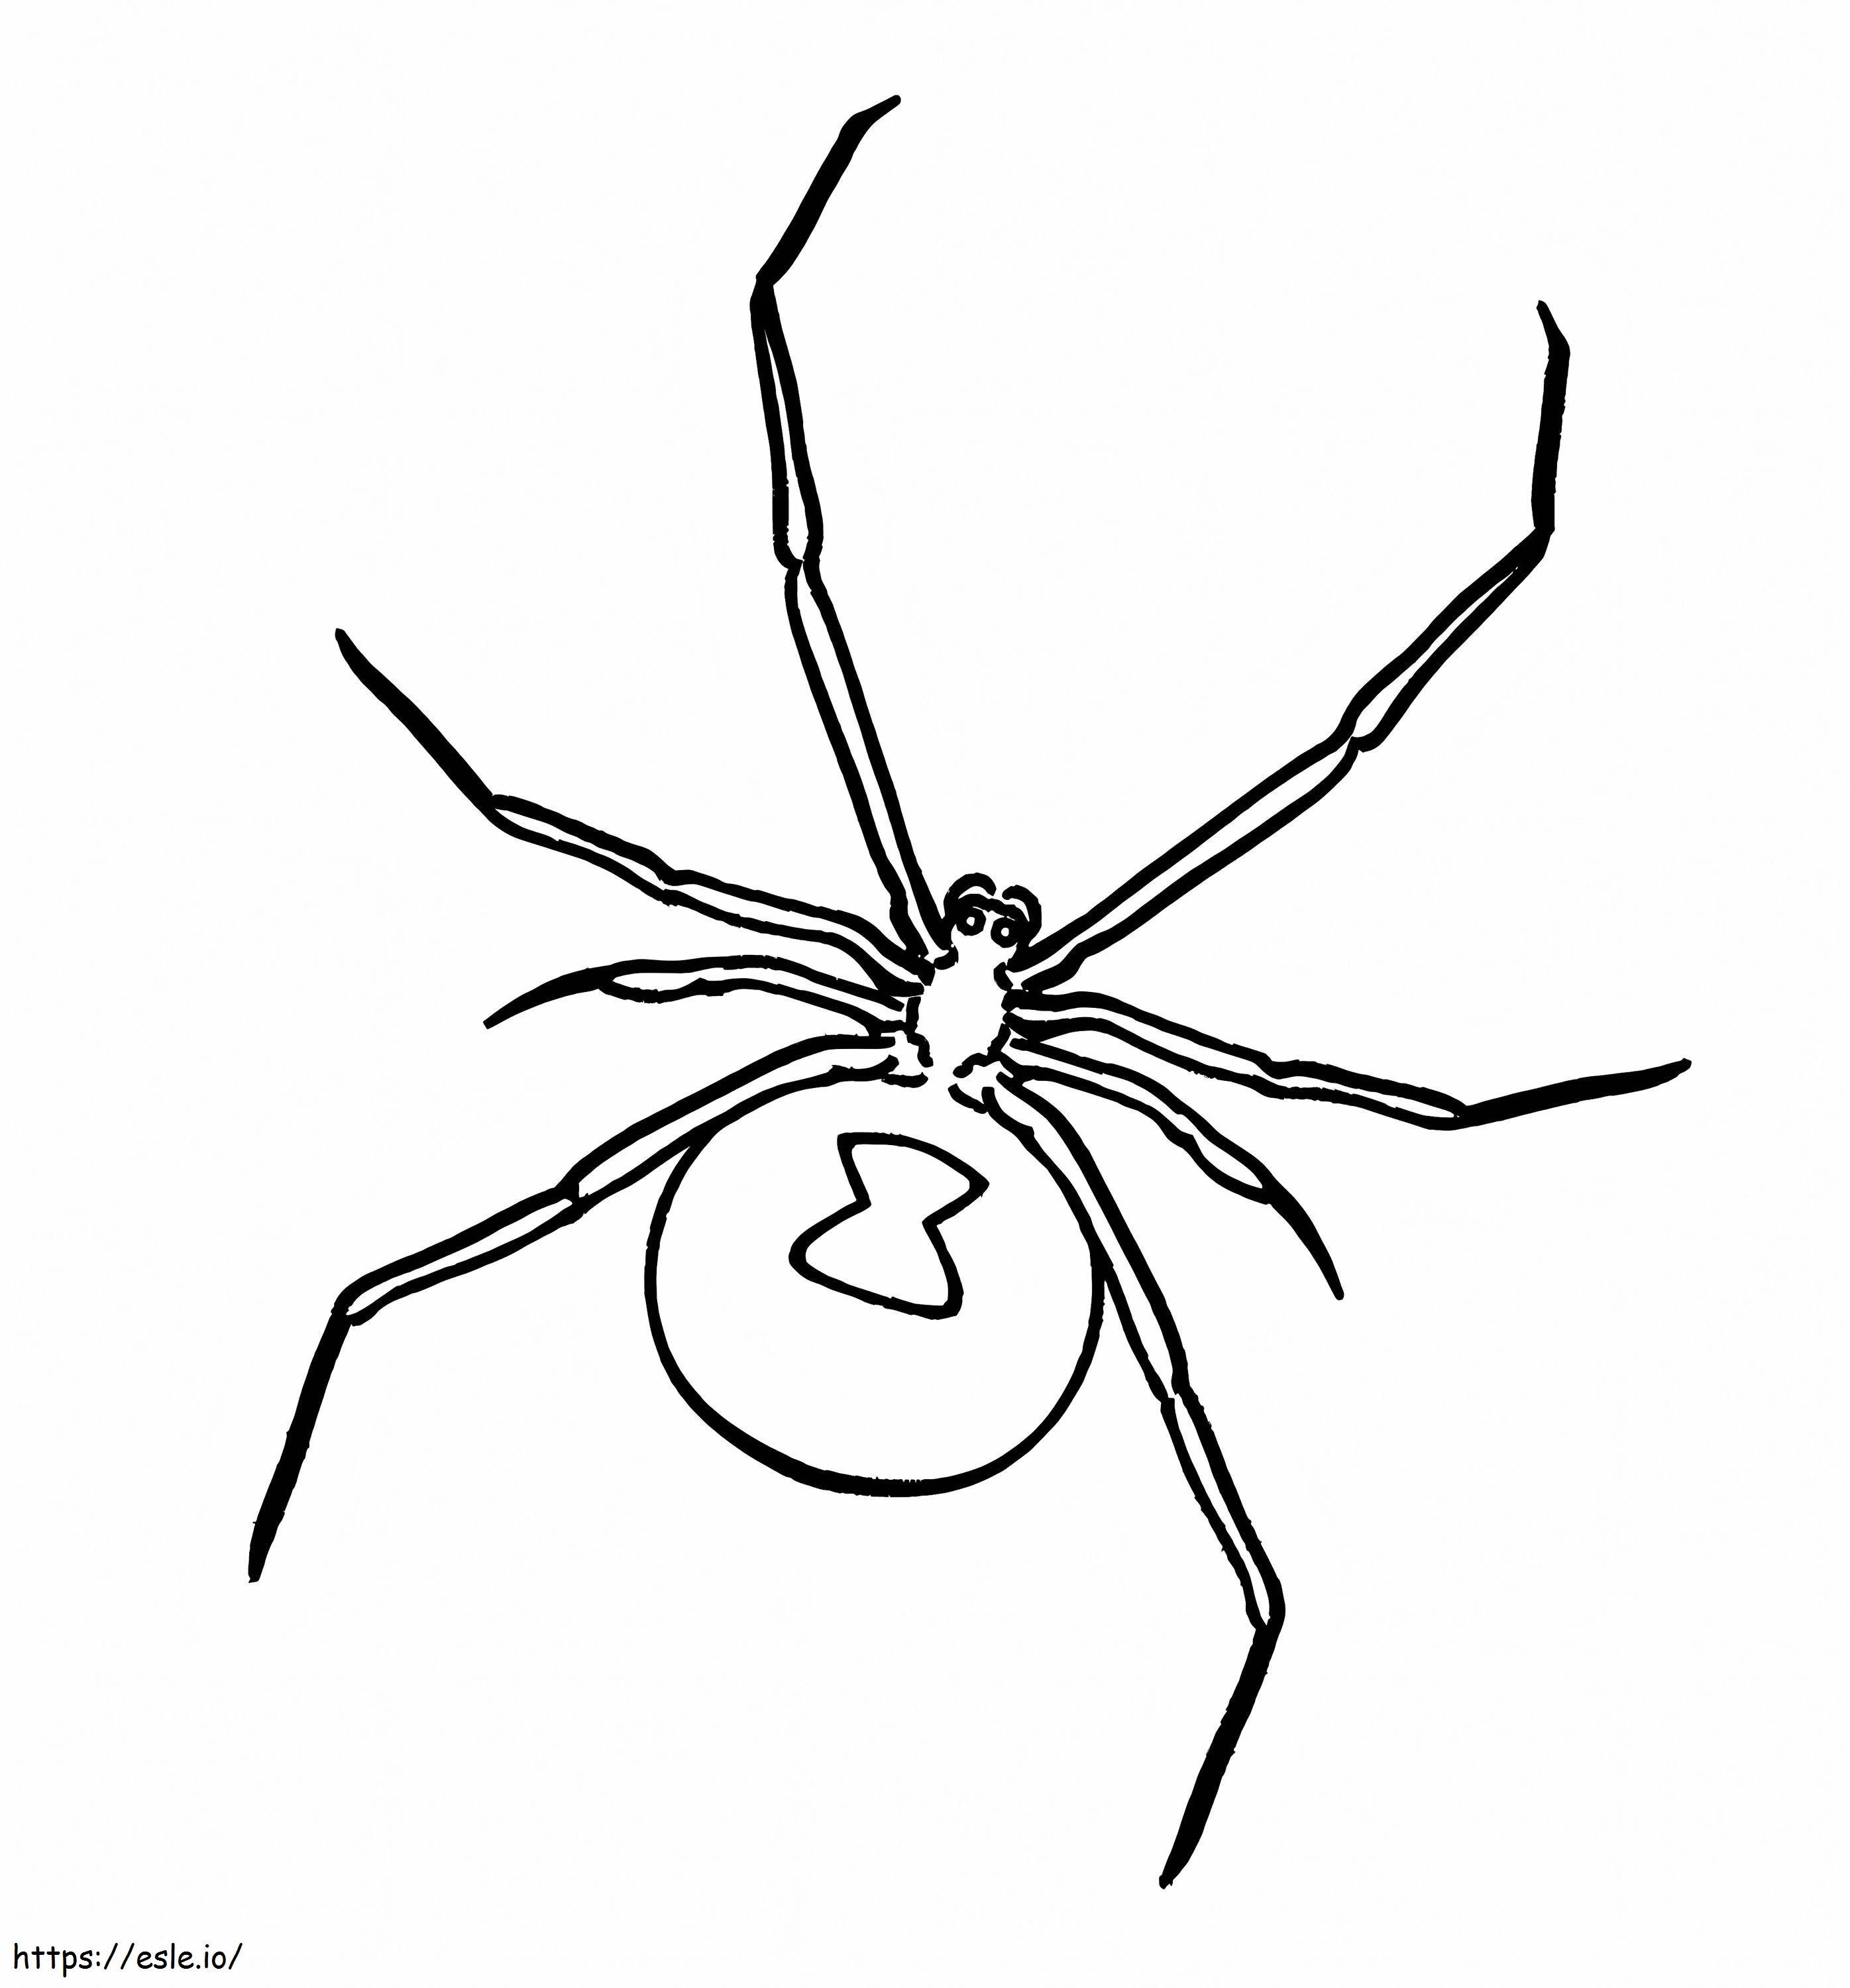 Die Spinne ist zurück ausmalbilder